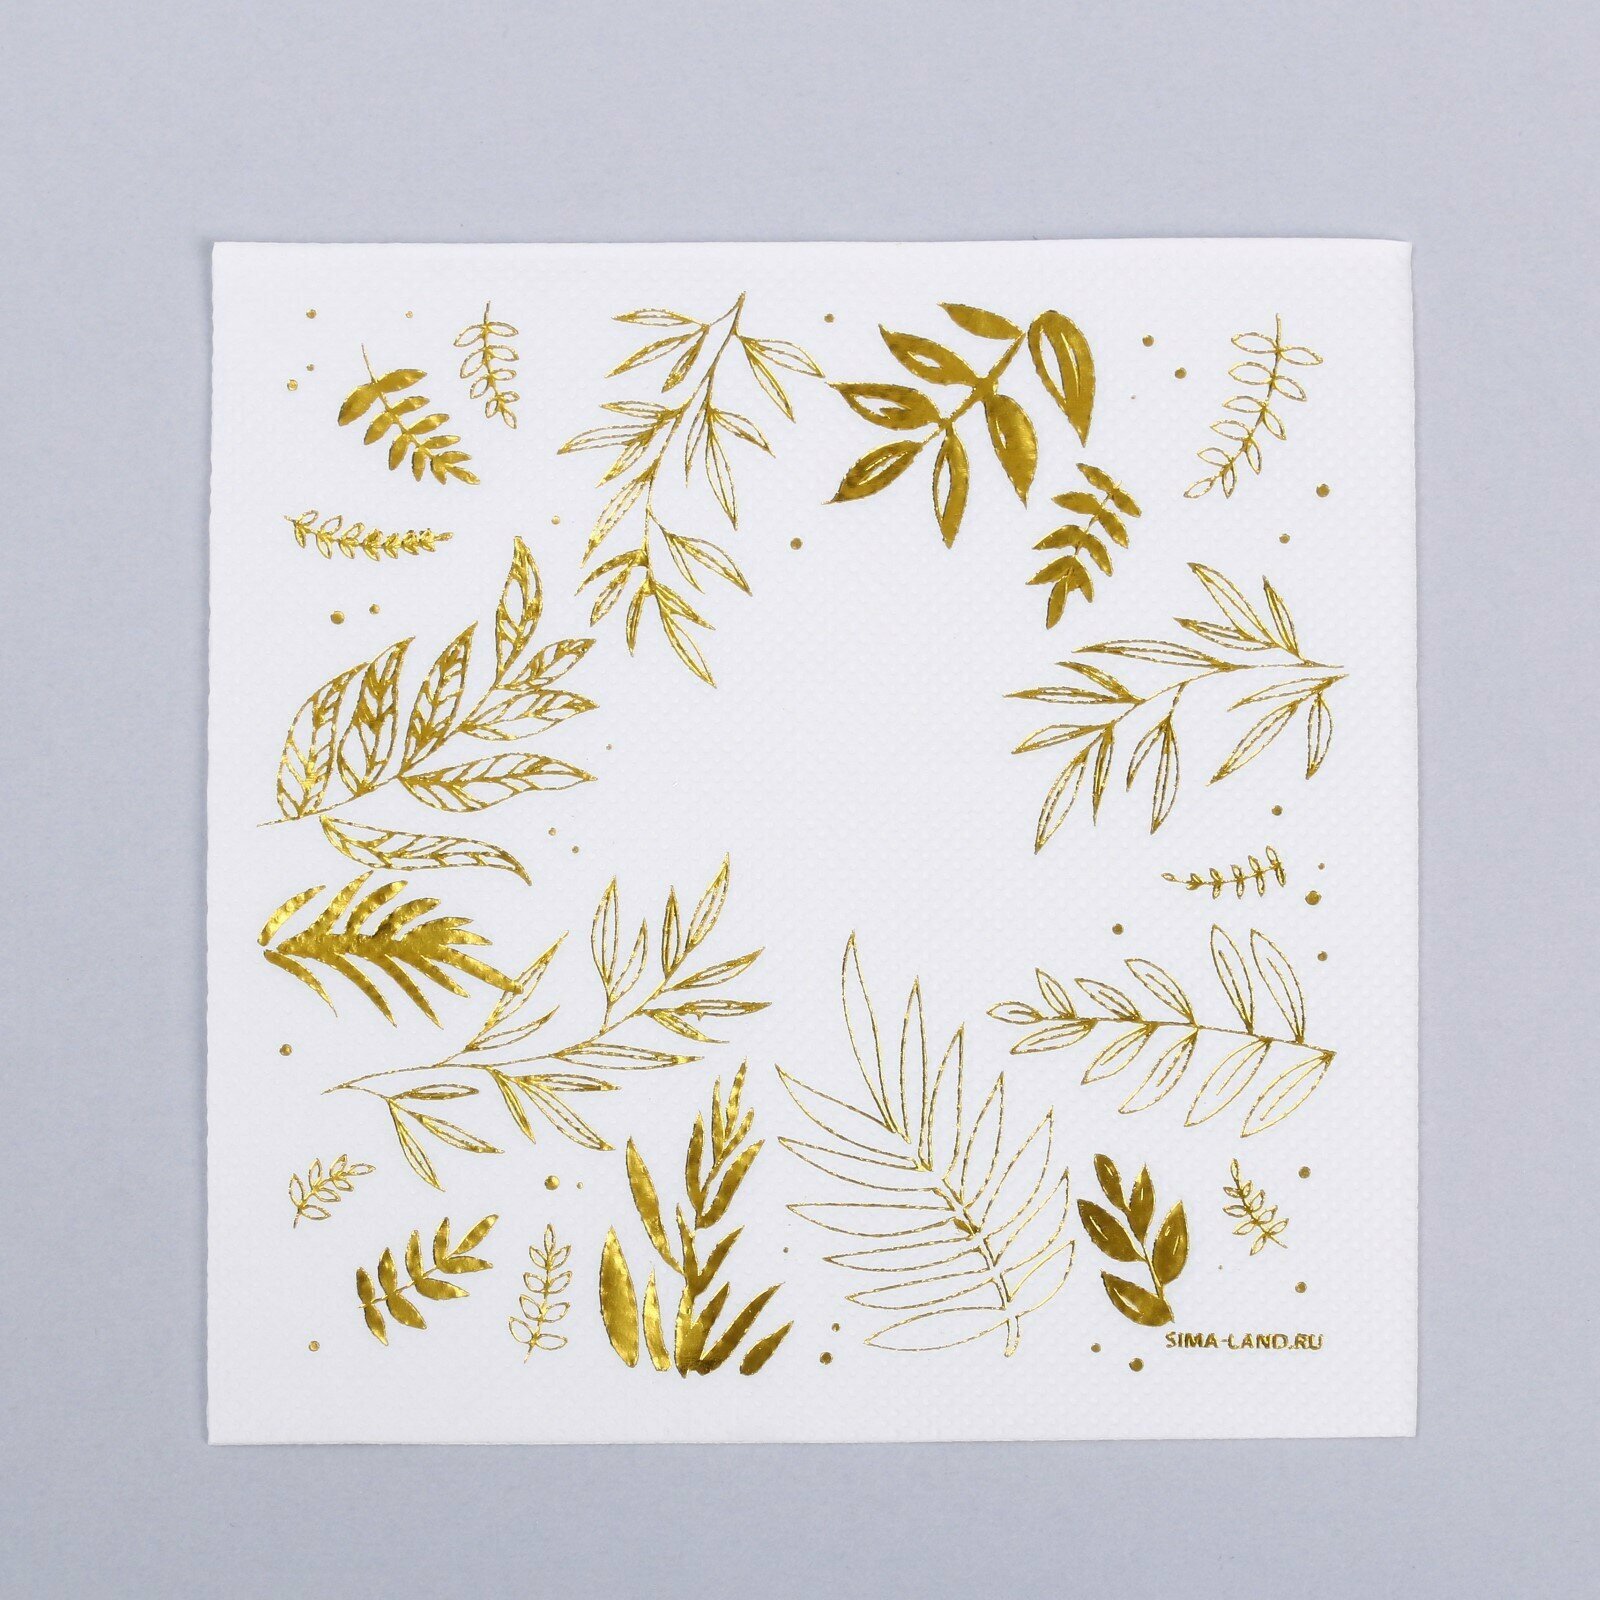 Салфетки бумажные «Природа», 20 шт, 25 × 25 см, золотое тиснение